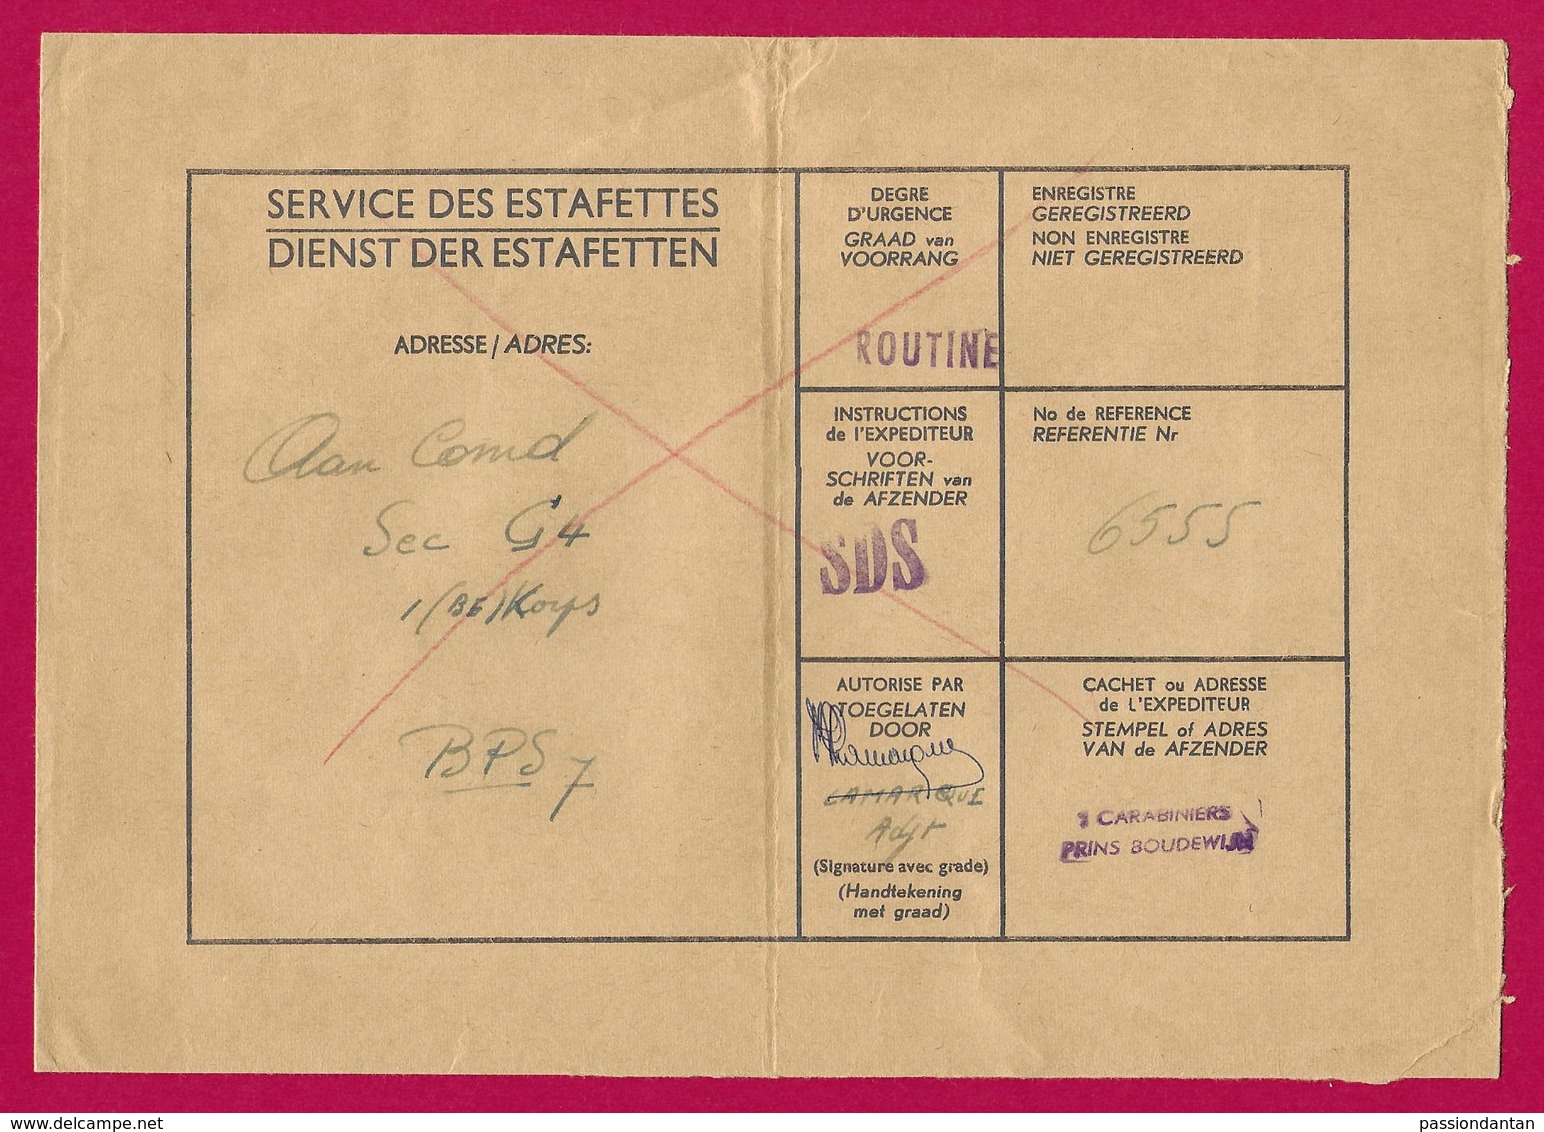 Enveloppe Du Service Des Estafettes Belges Datée De 1965 - Expédiée Du 1er Carabiniers Prins Boudewijn - Marques D'armées